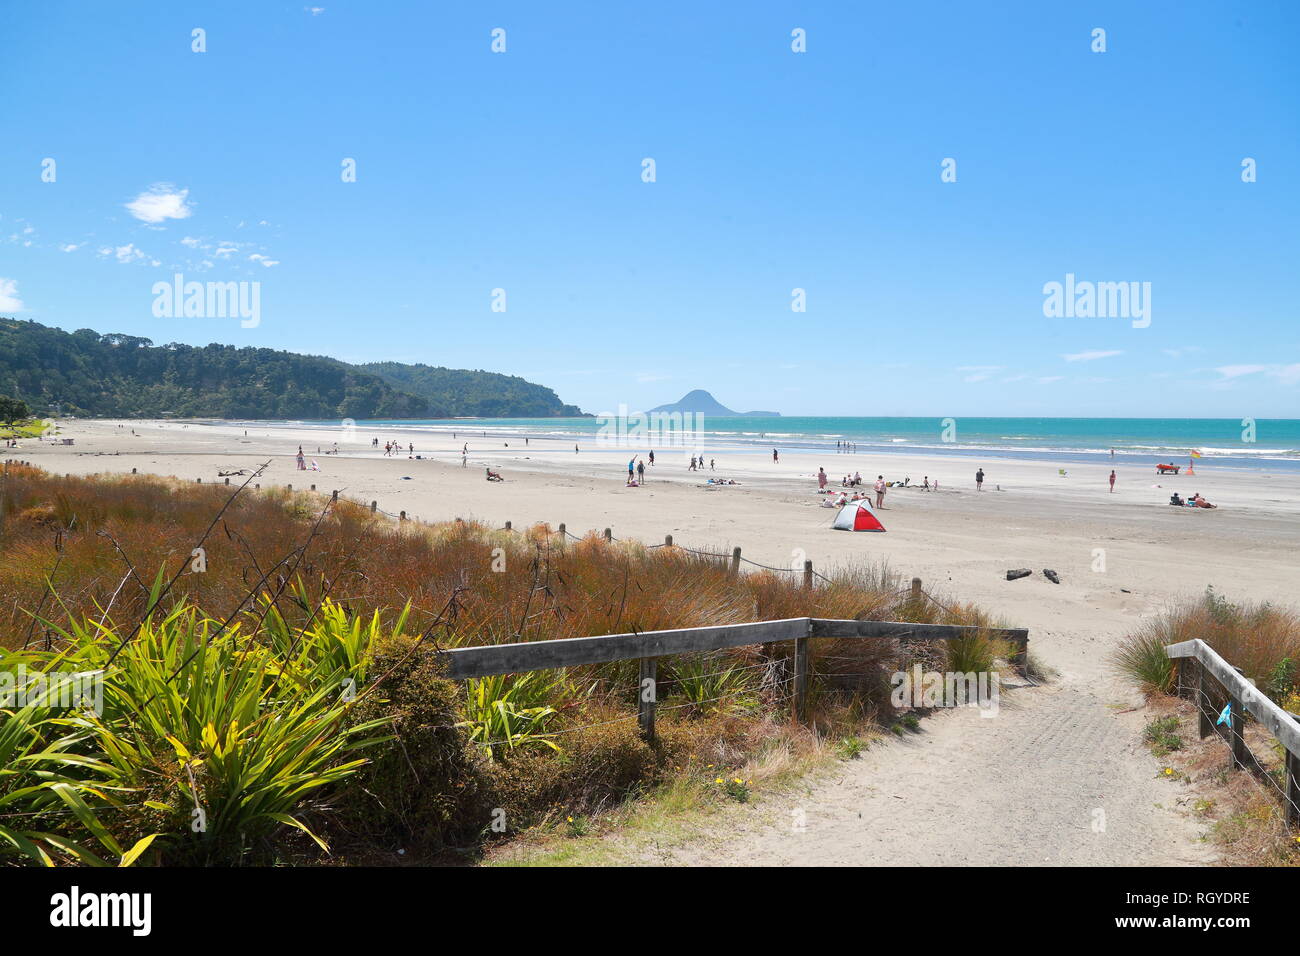 Nuotatori e acqua gli appassionati sportivi si divertono a Whakatane Beach, Nuova Zelanda Foto Stock